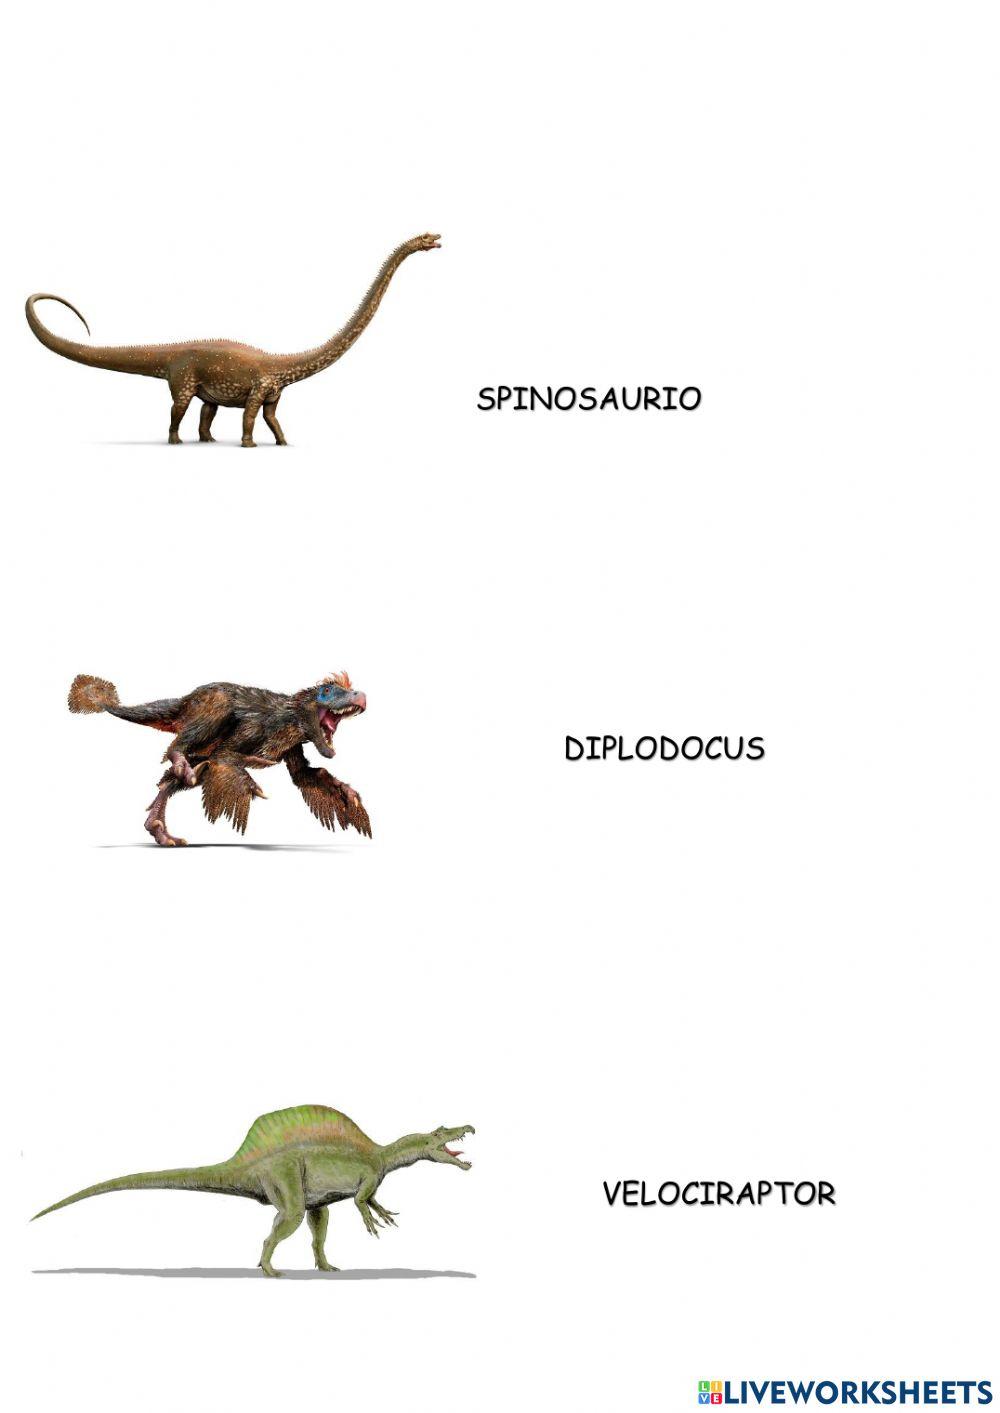 Relaciona cada dinosaurio con su nombre